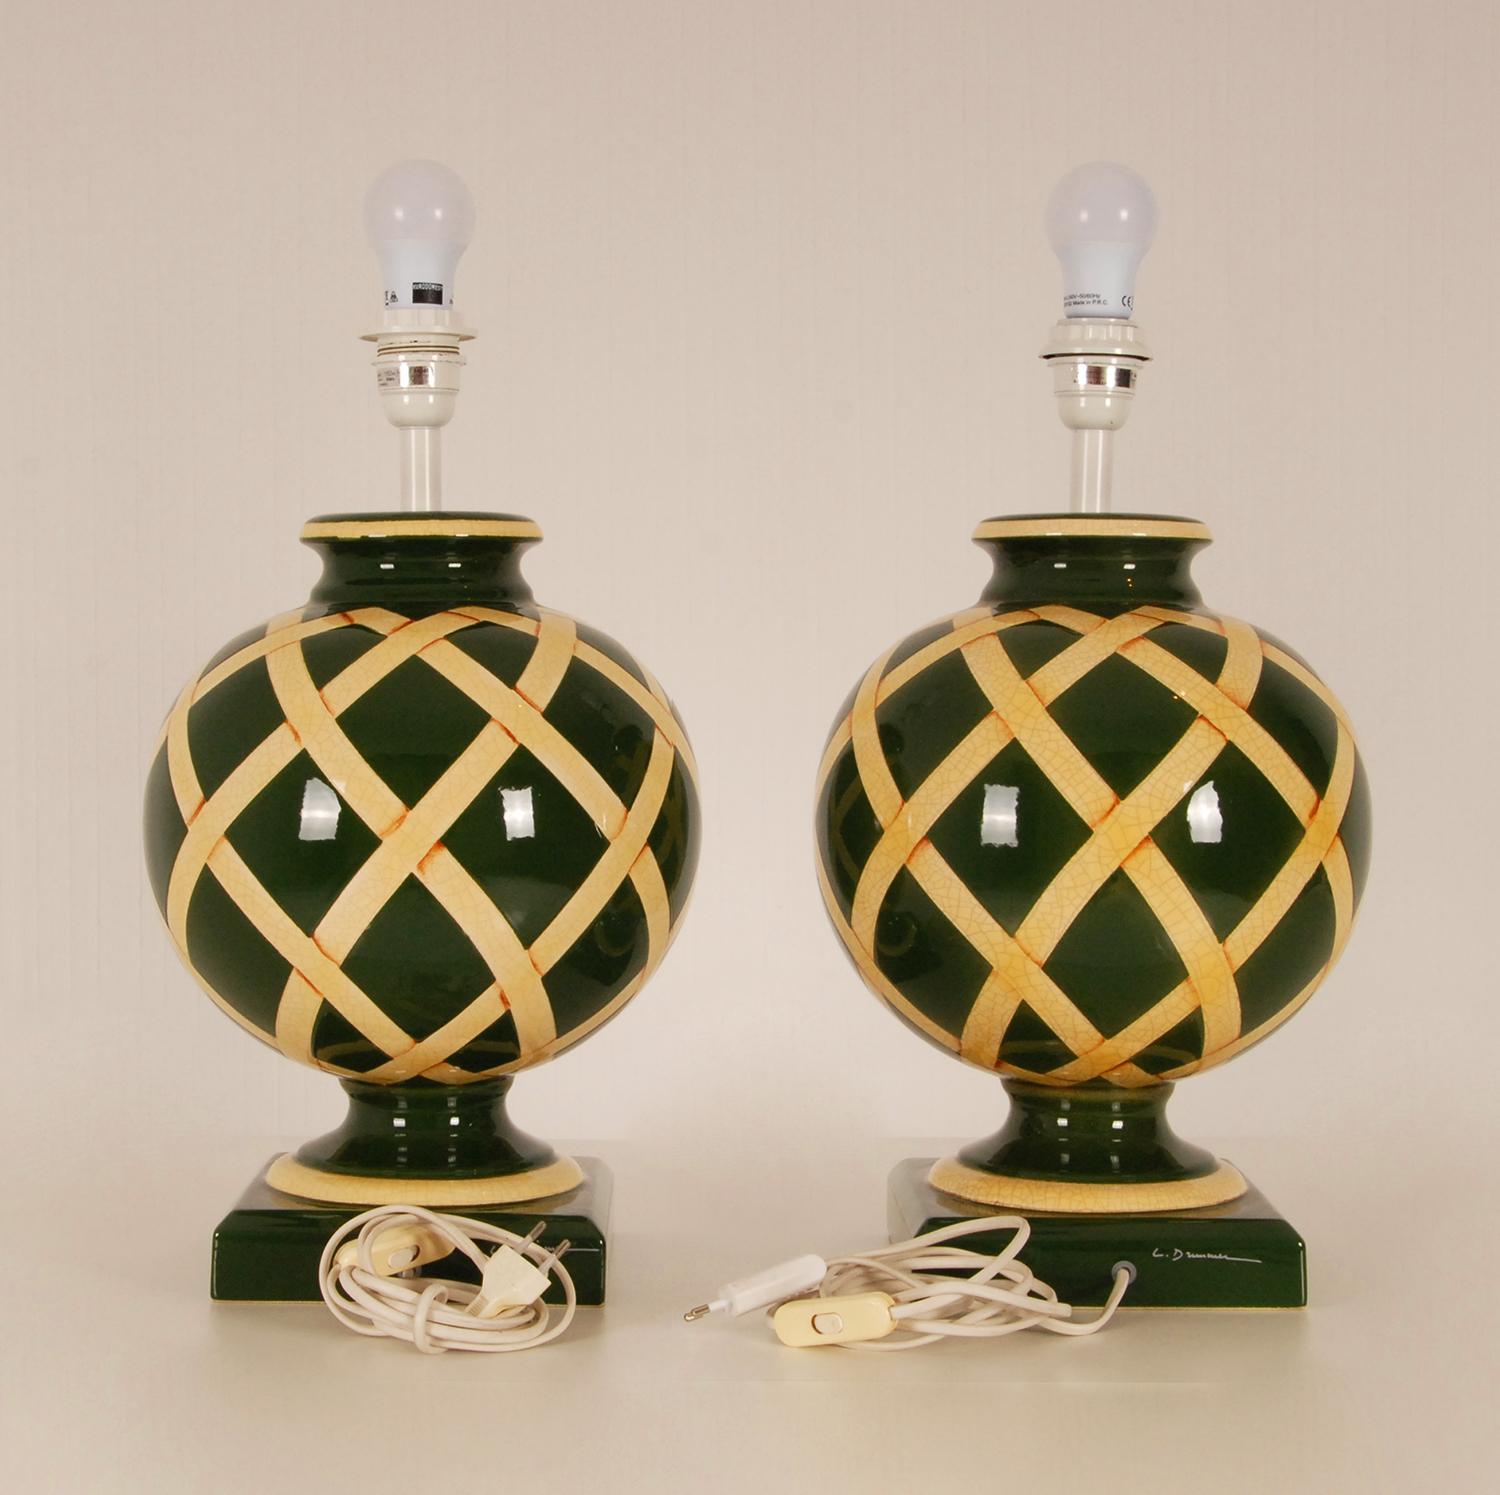 Ein Paar große französische Keramik-Tischlampen im klassischen Landhausstil - hohe klassische Vasenlampen

MATERIAL: Porzellan - Keramik, Fayence
Design/One : Französisch (signiert), Louis Drimmer
Produzent: Nach dem Vorbild von Longwy, Robert